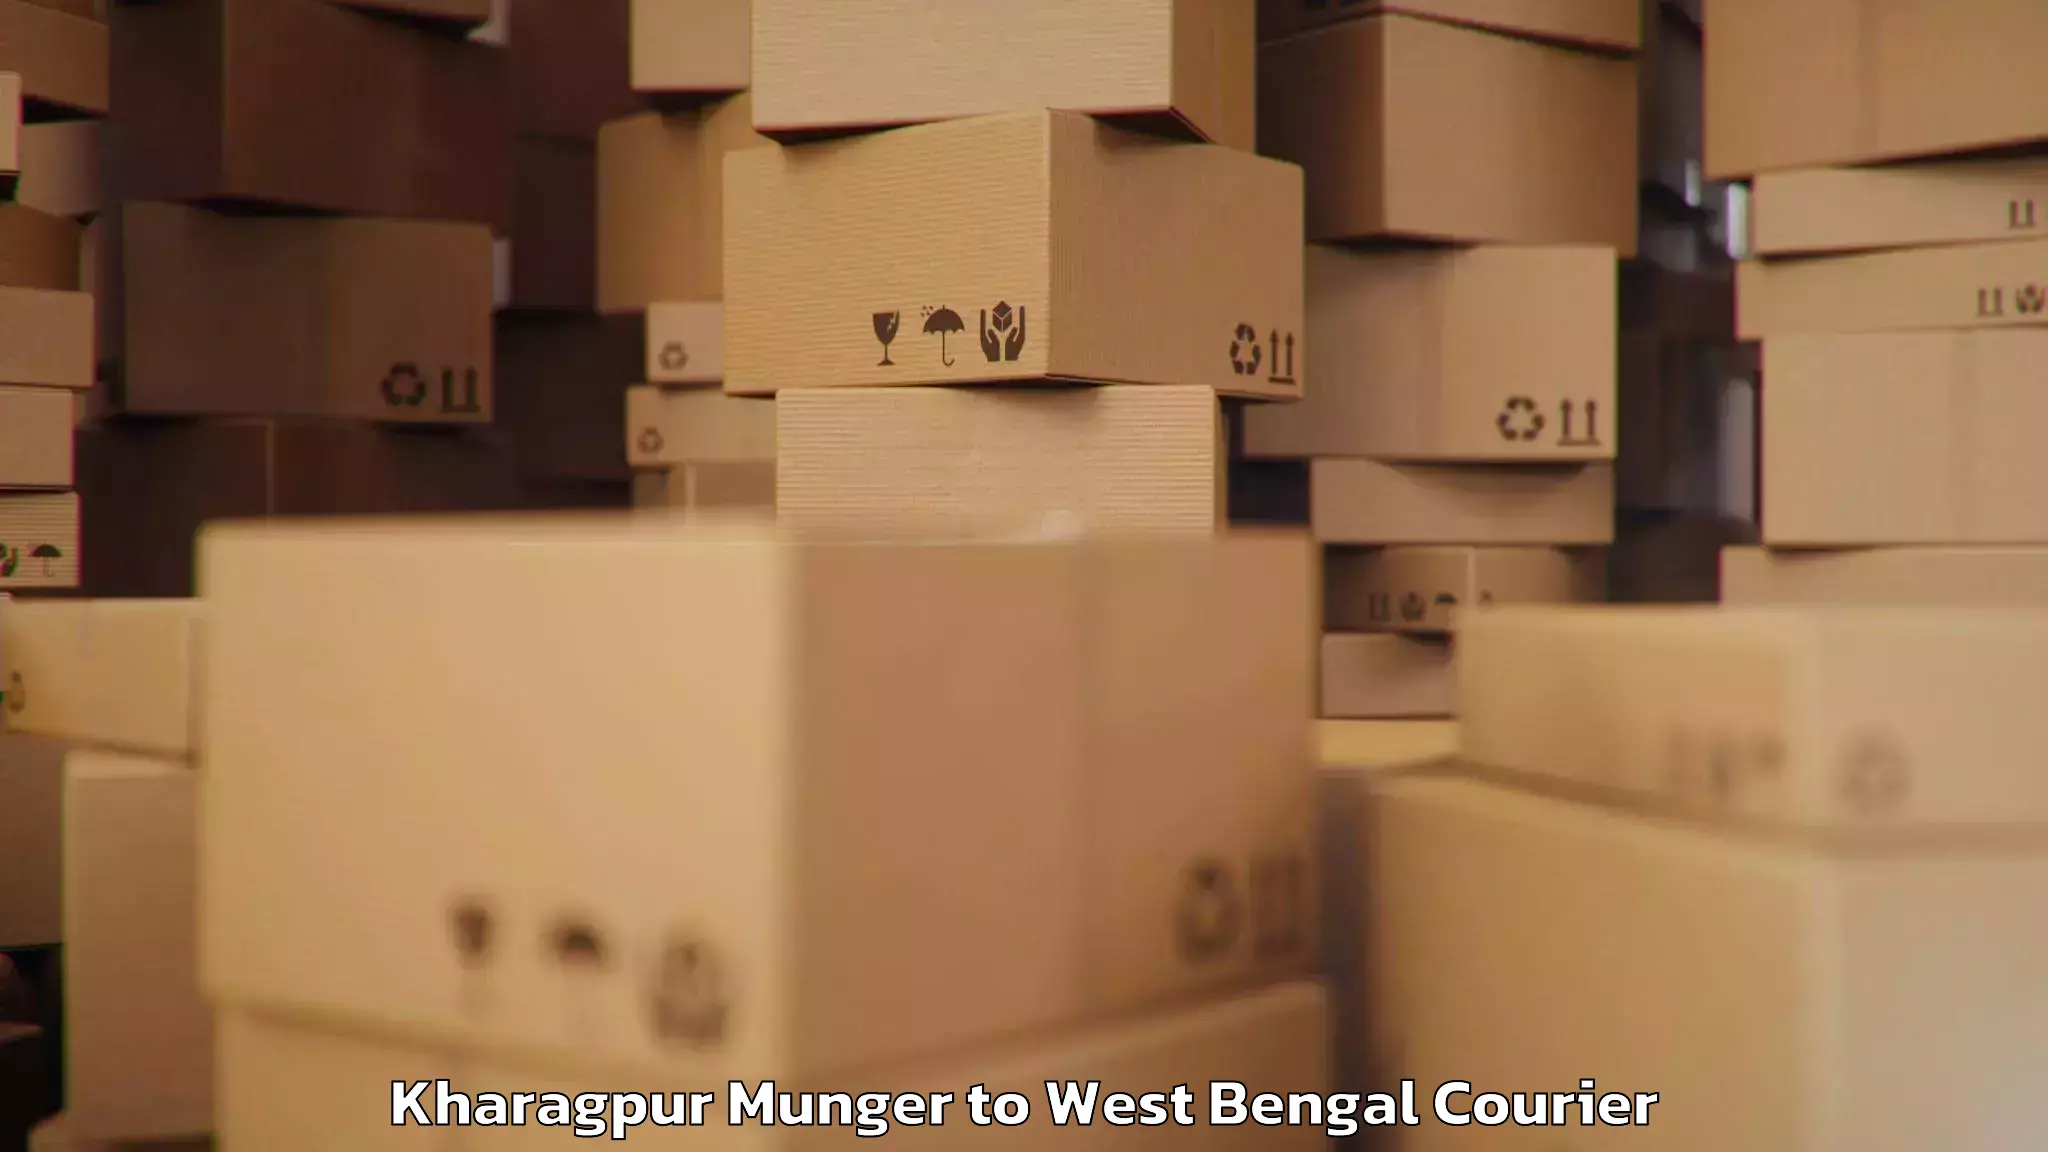 Luggage shipping service Kharagpur Munger to Algarah